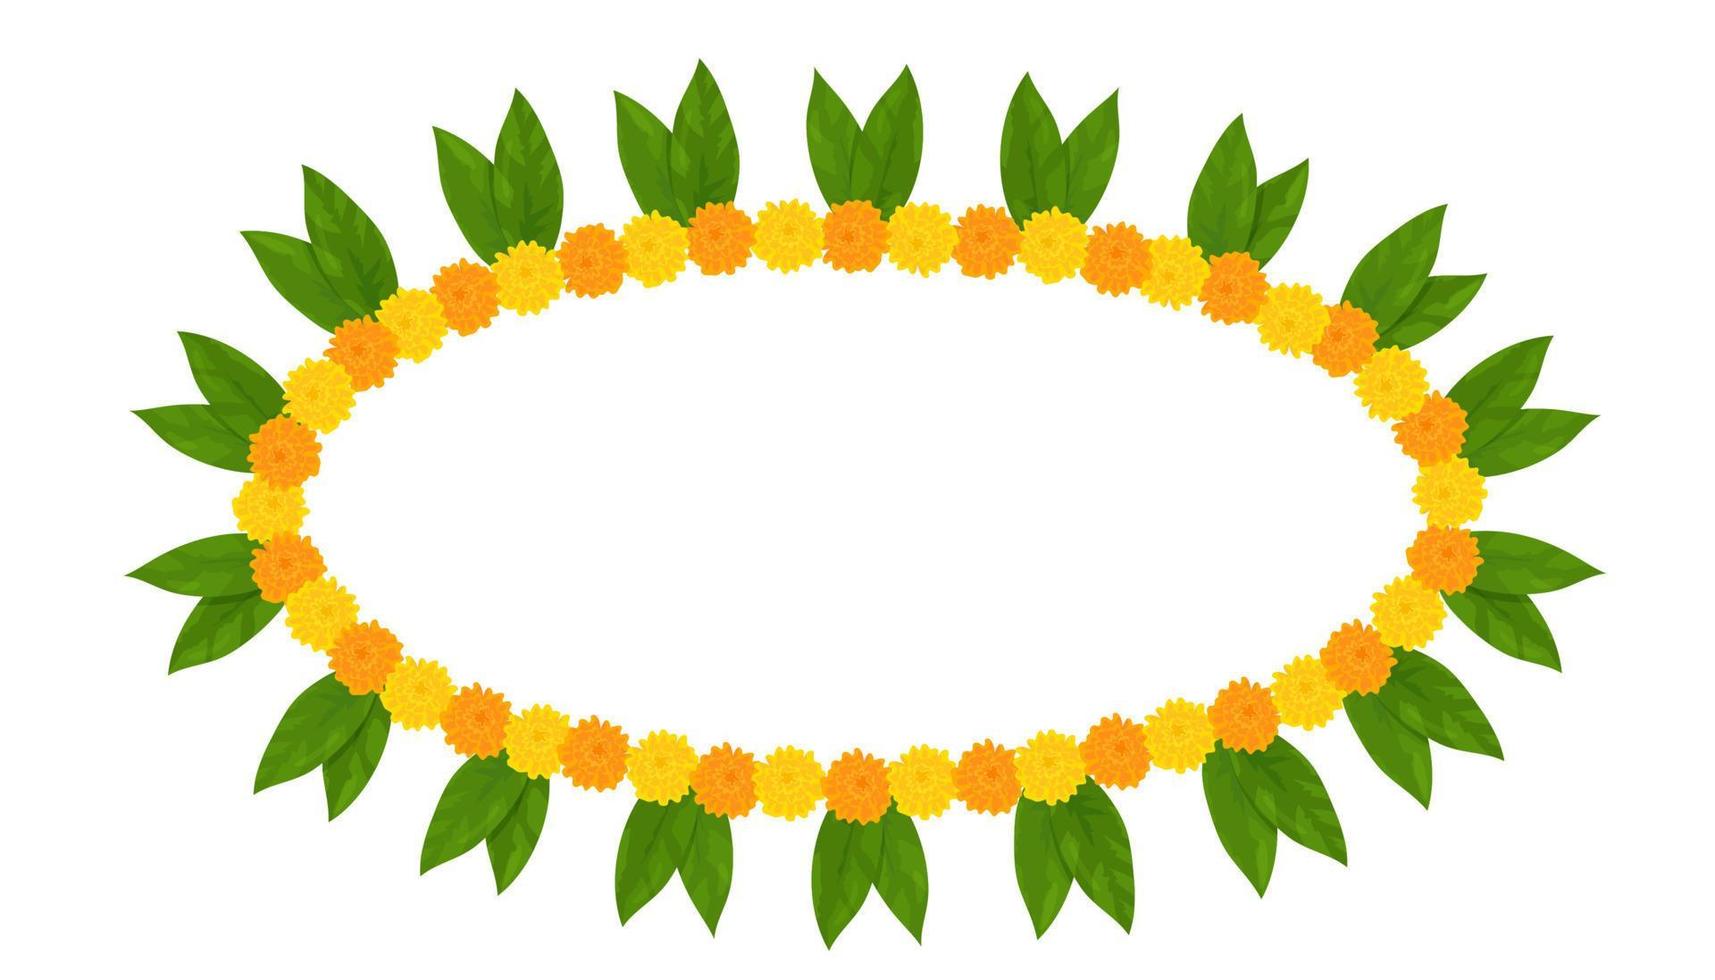 traditioneller indischer blumengirlandenrahmen mit ringelblumen und mangoblättern. Dekoration für indische hinduistische Feiertage. Vektor-Illustration isoliert auf weißem Hintergrund. vektor